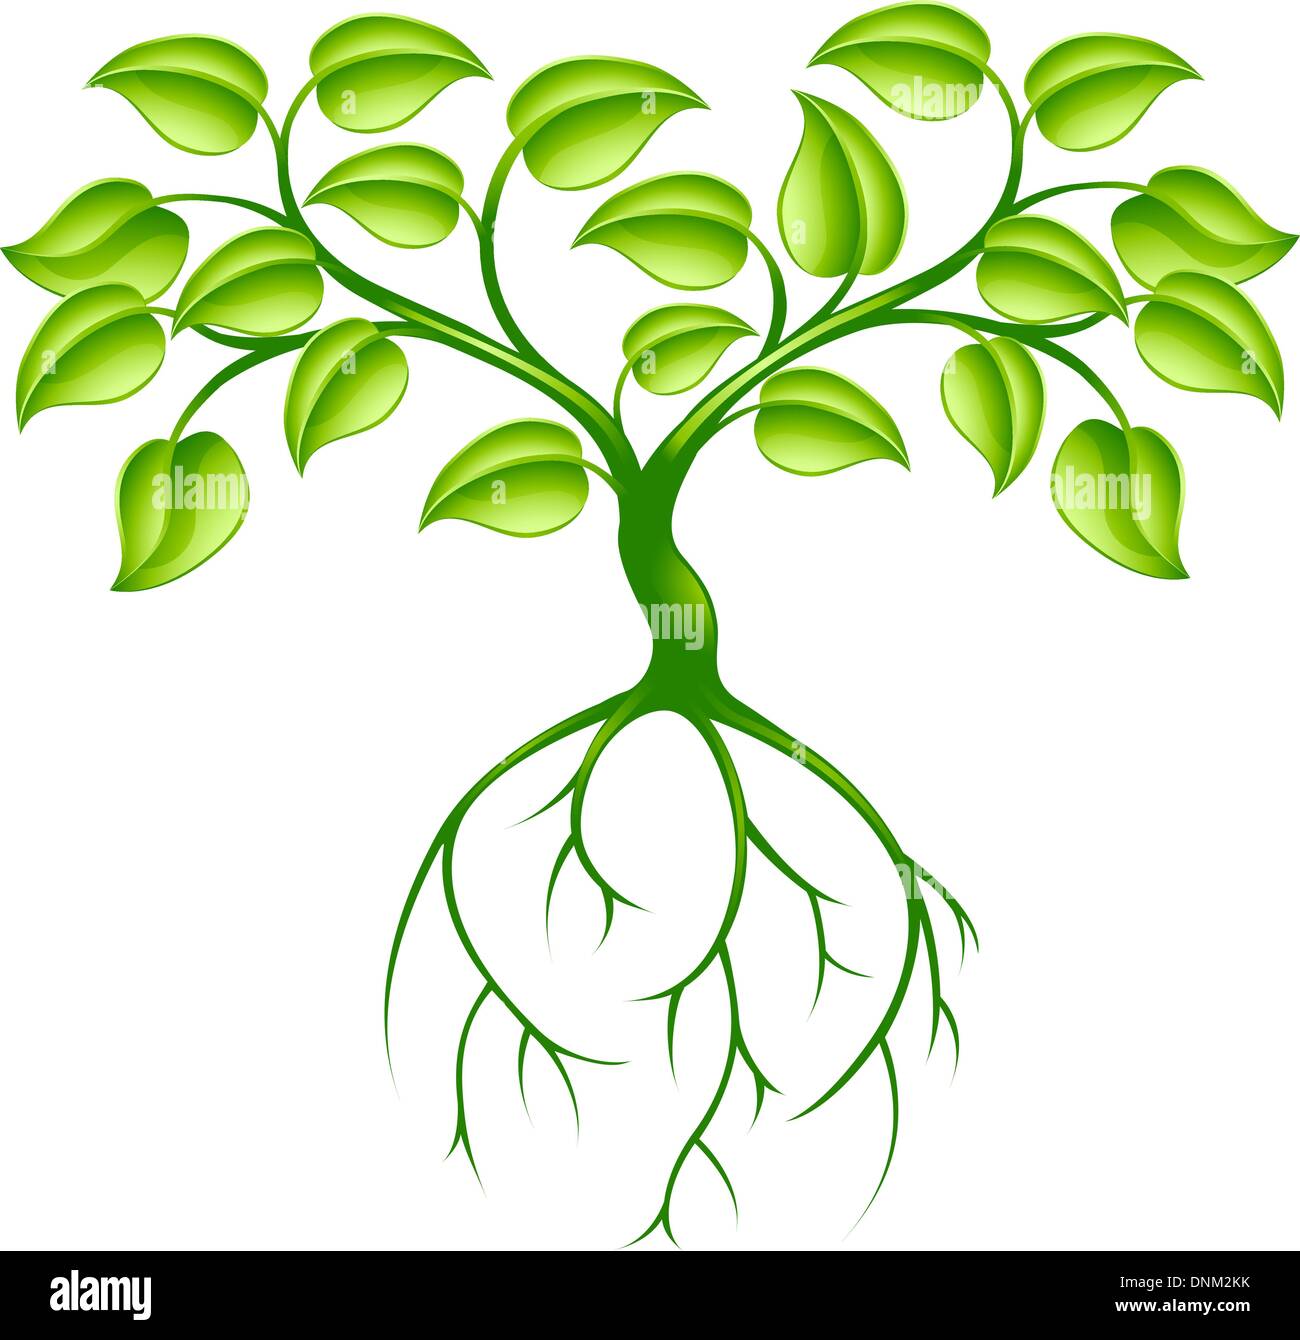 Concept de design graphique de l'arbre vert avec de longues racines Illustration de Vecteur